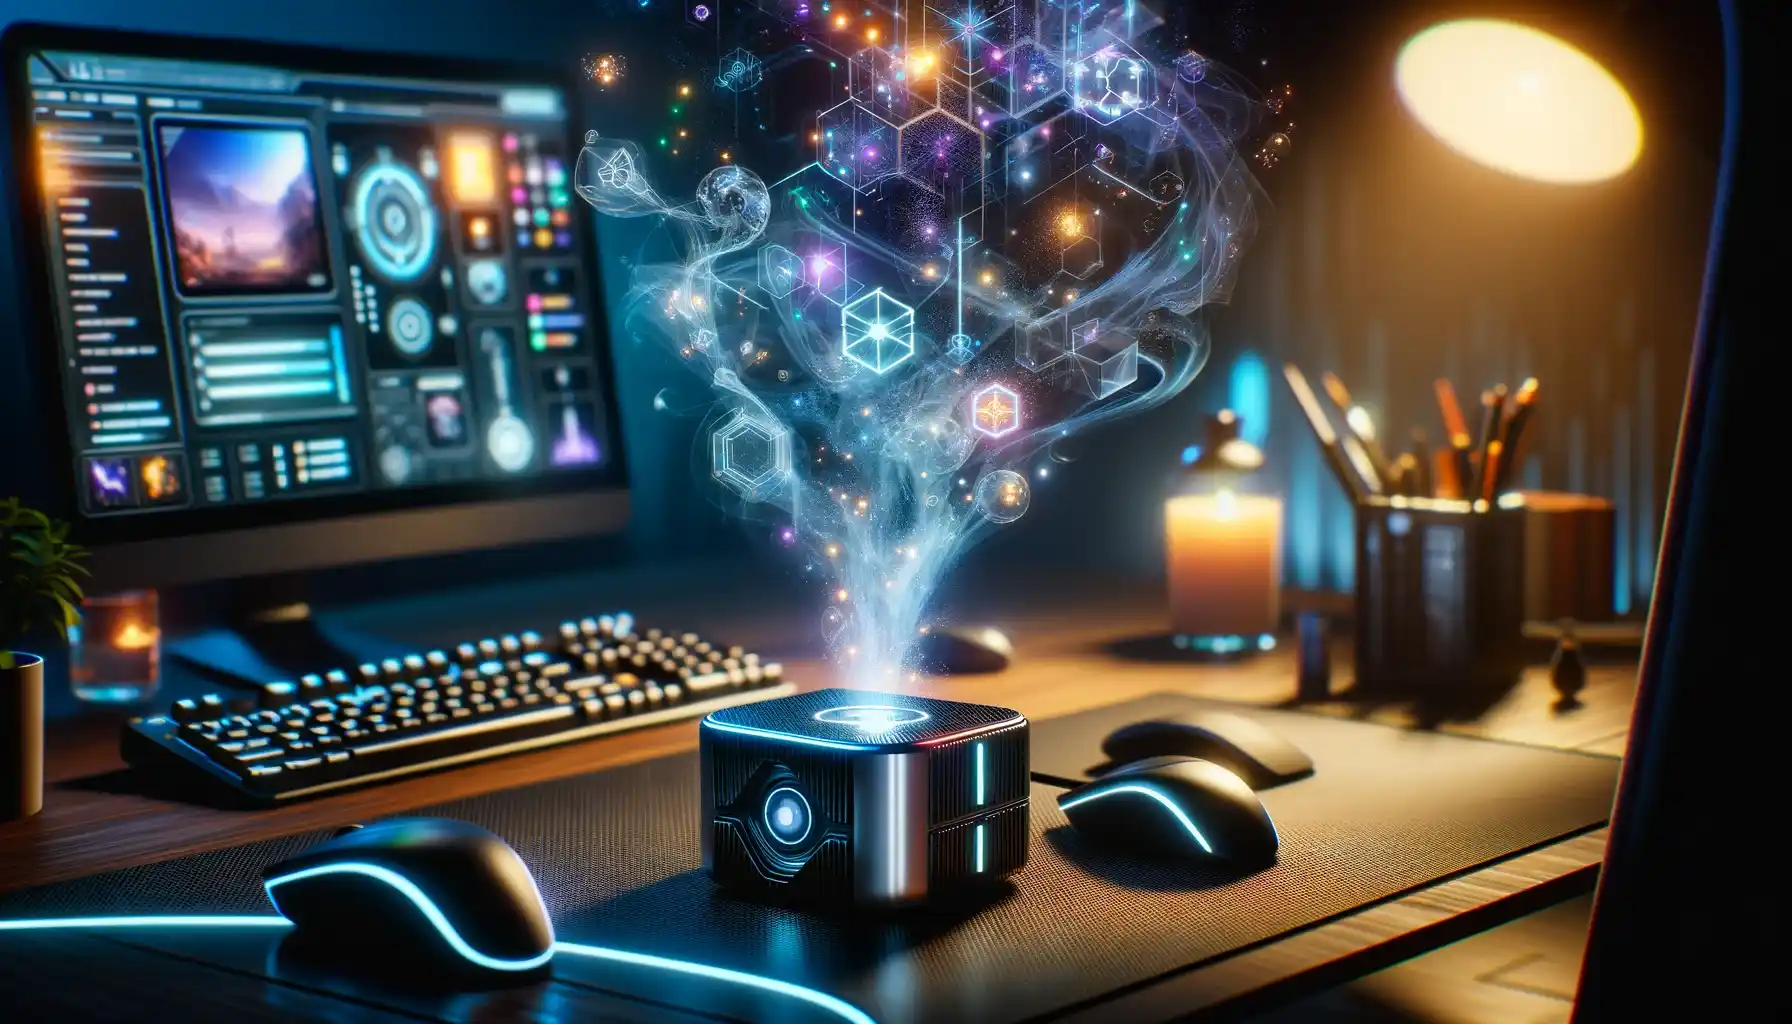 Futuristički uređaj GameScent koji emituje mirise, povezan s računarom i gaming konzolom u modernom gaming okruženju, simbolizirajući integraciju mirisa u svijet video igara.